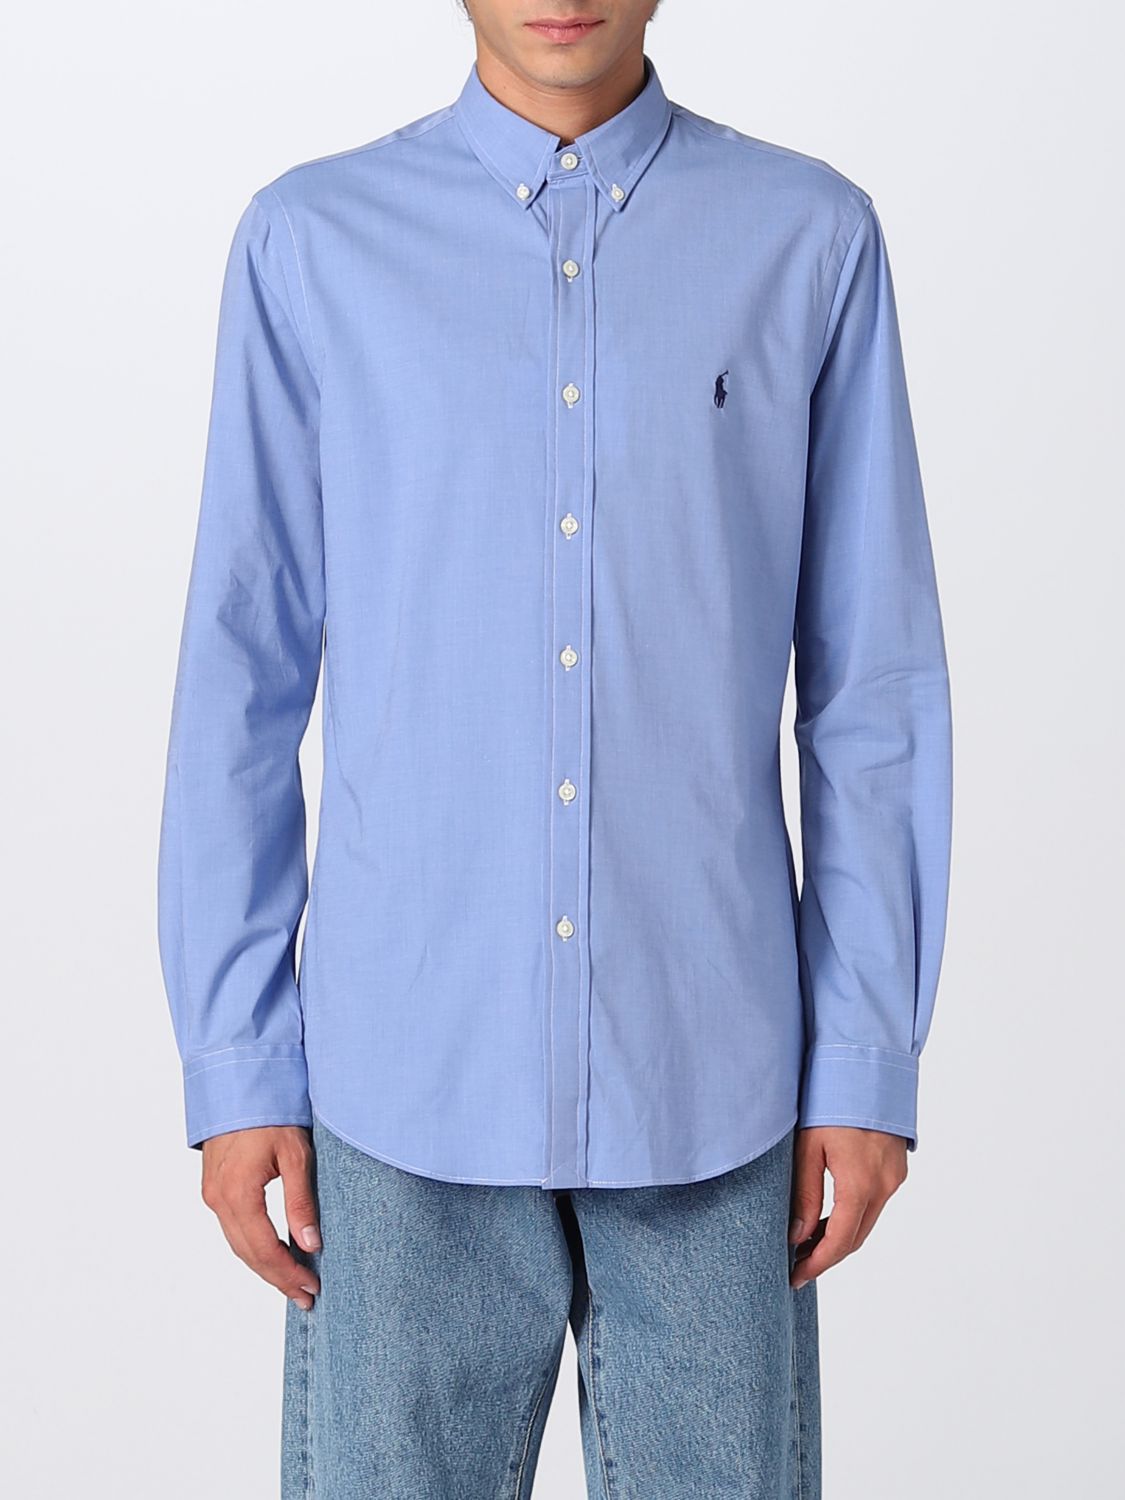 Polo Ralph Lauren Outlet: shirt for man Blue | Polo Ralph Lauren shirt 710832480